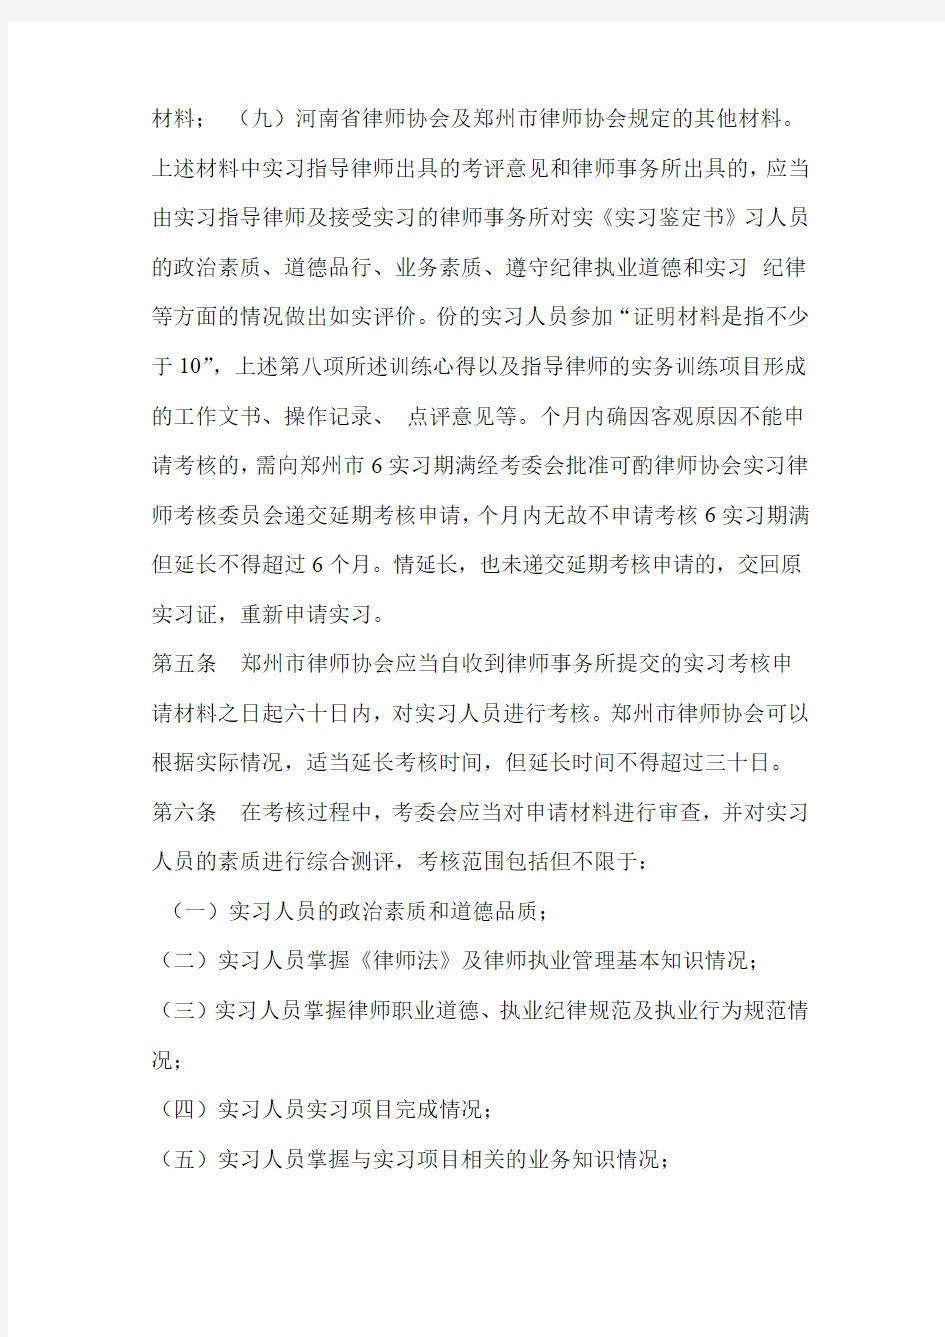 郑州申请律师执业人员实习考核办法